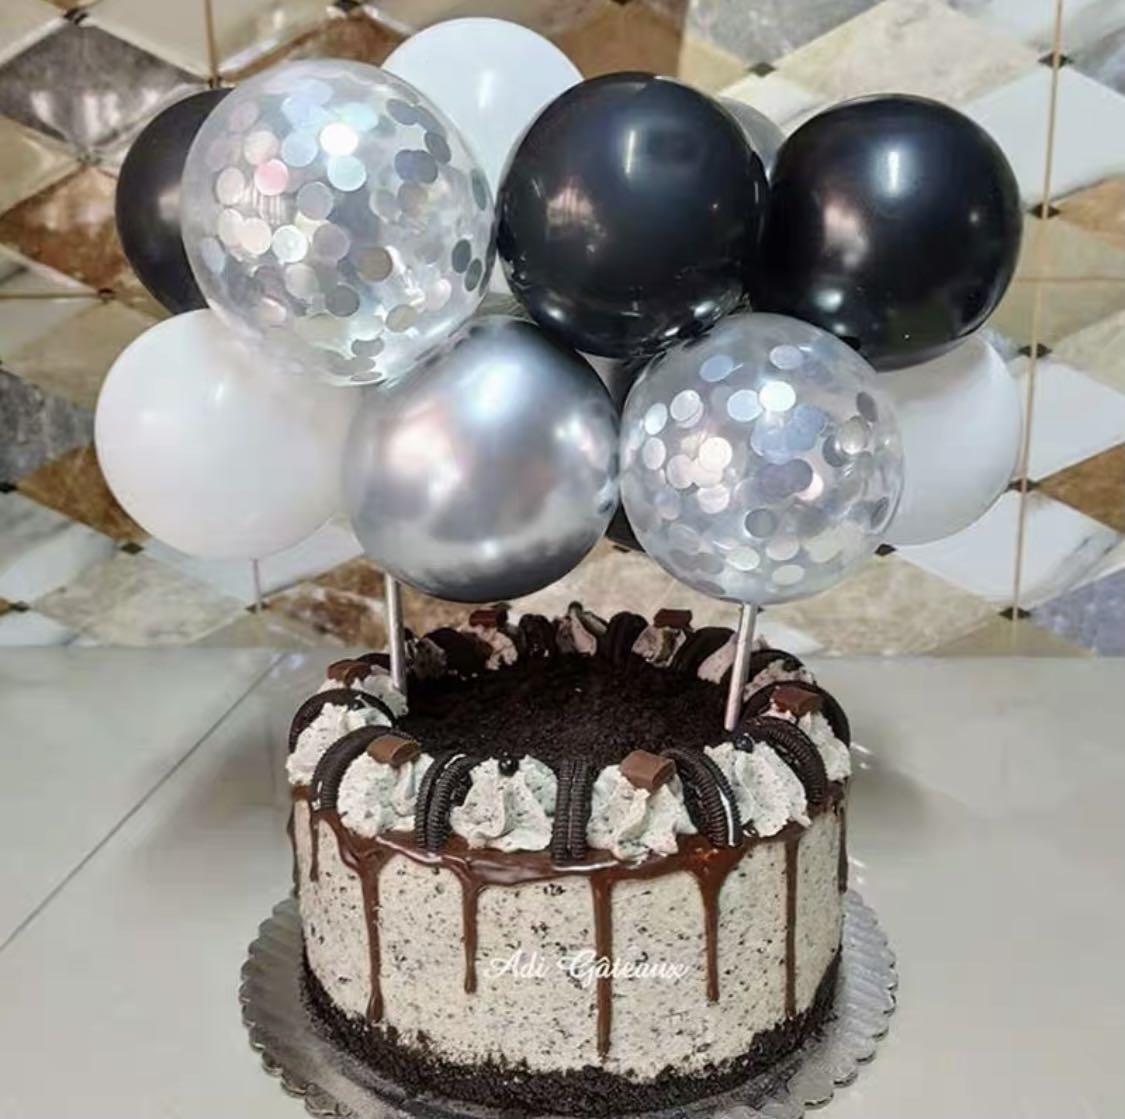 Chocolate Birthday Cake Ice Cream Balloons Stock Photo 154486319 |  Shutterstock